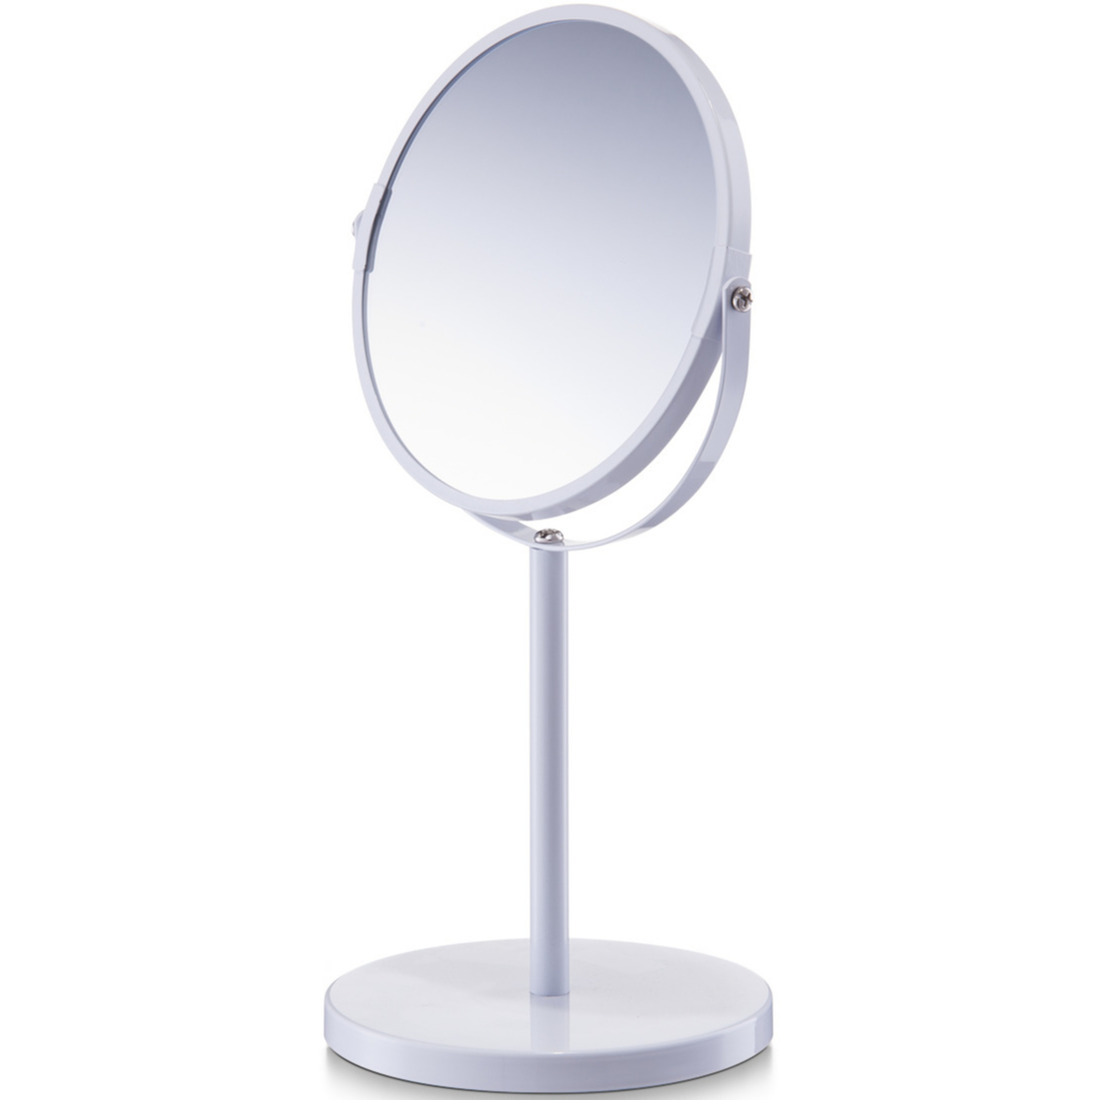 Zeller Witte make-up spiegel rond dubbelzijdig 15 x 26 cm -